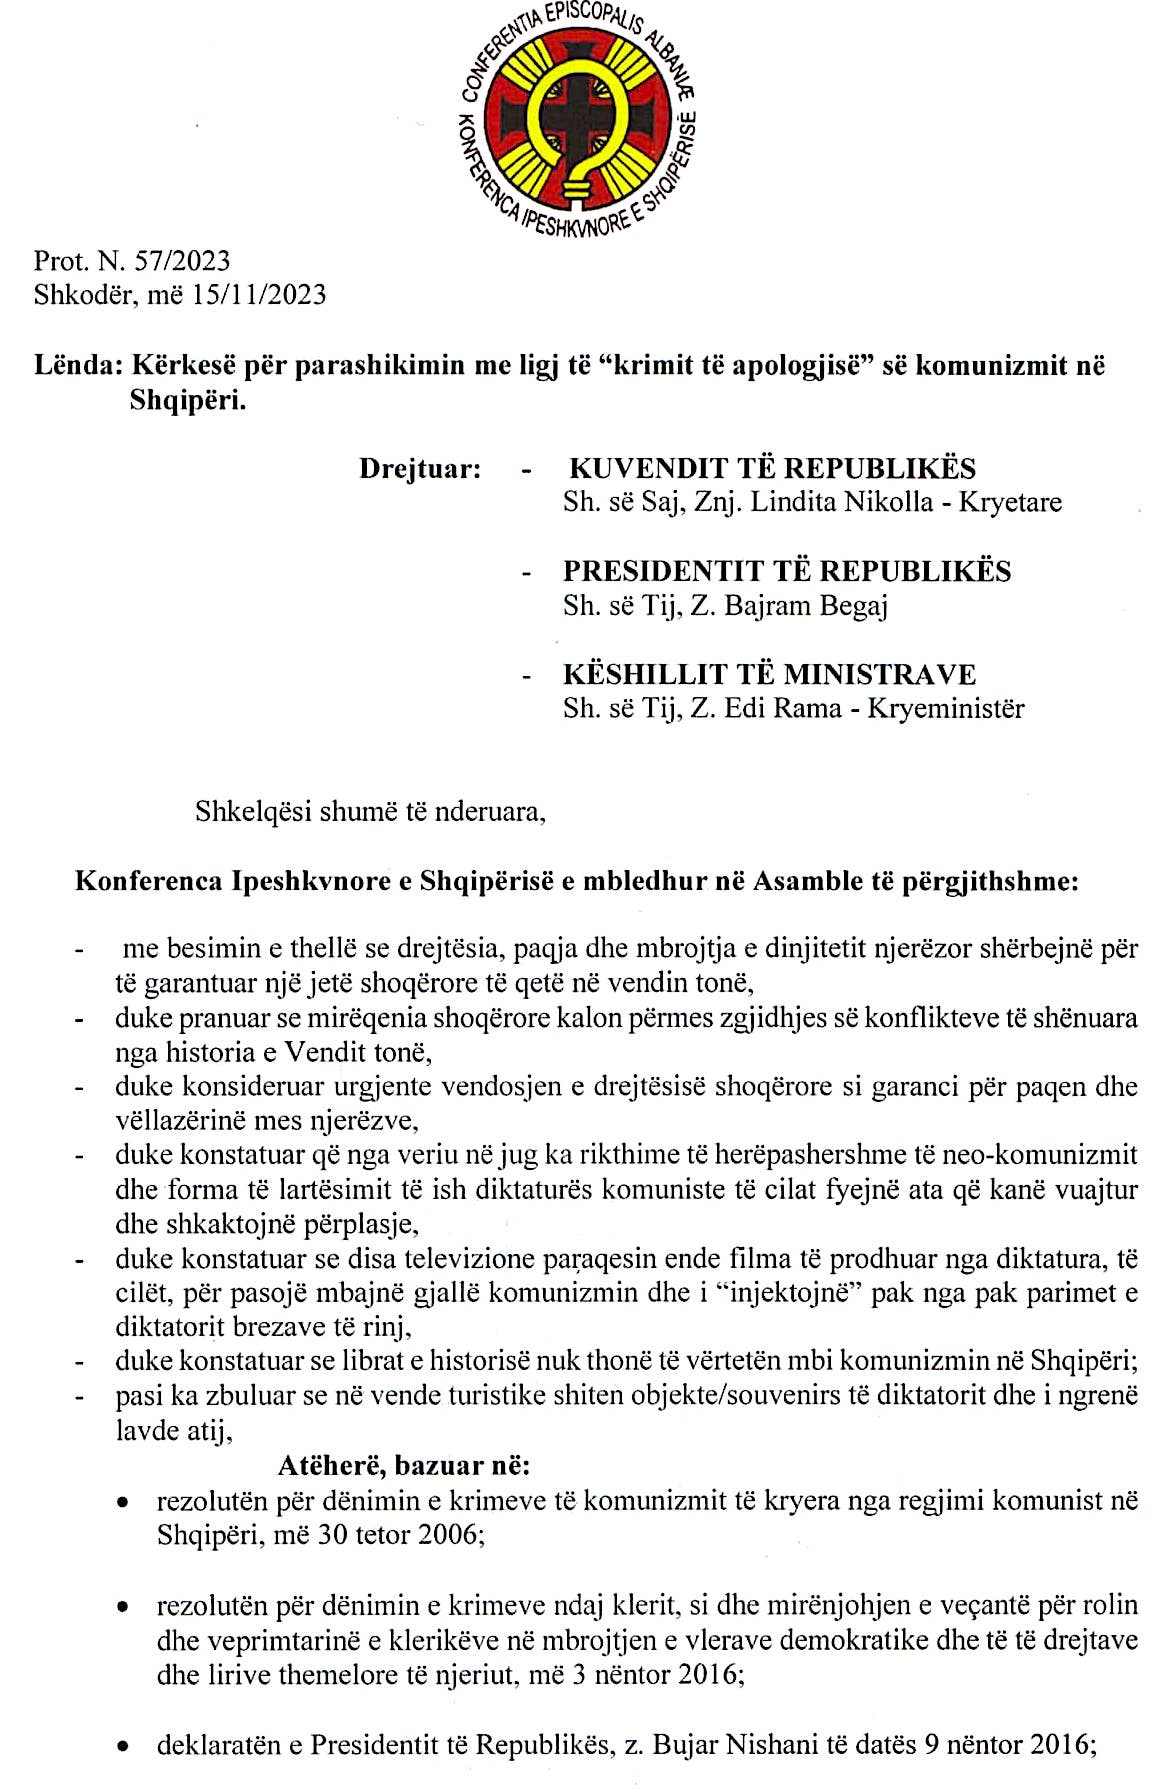 Konferenca Ipeshkvnore - Letër Shtetit Shqiptar